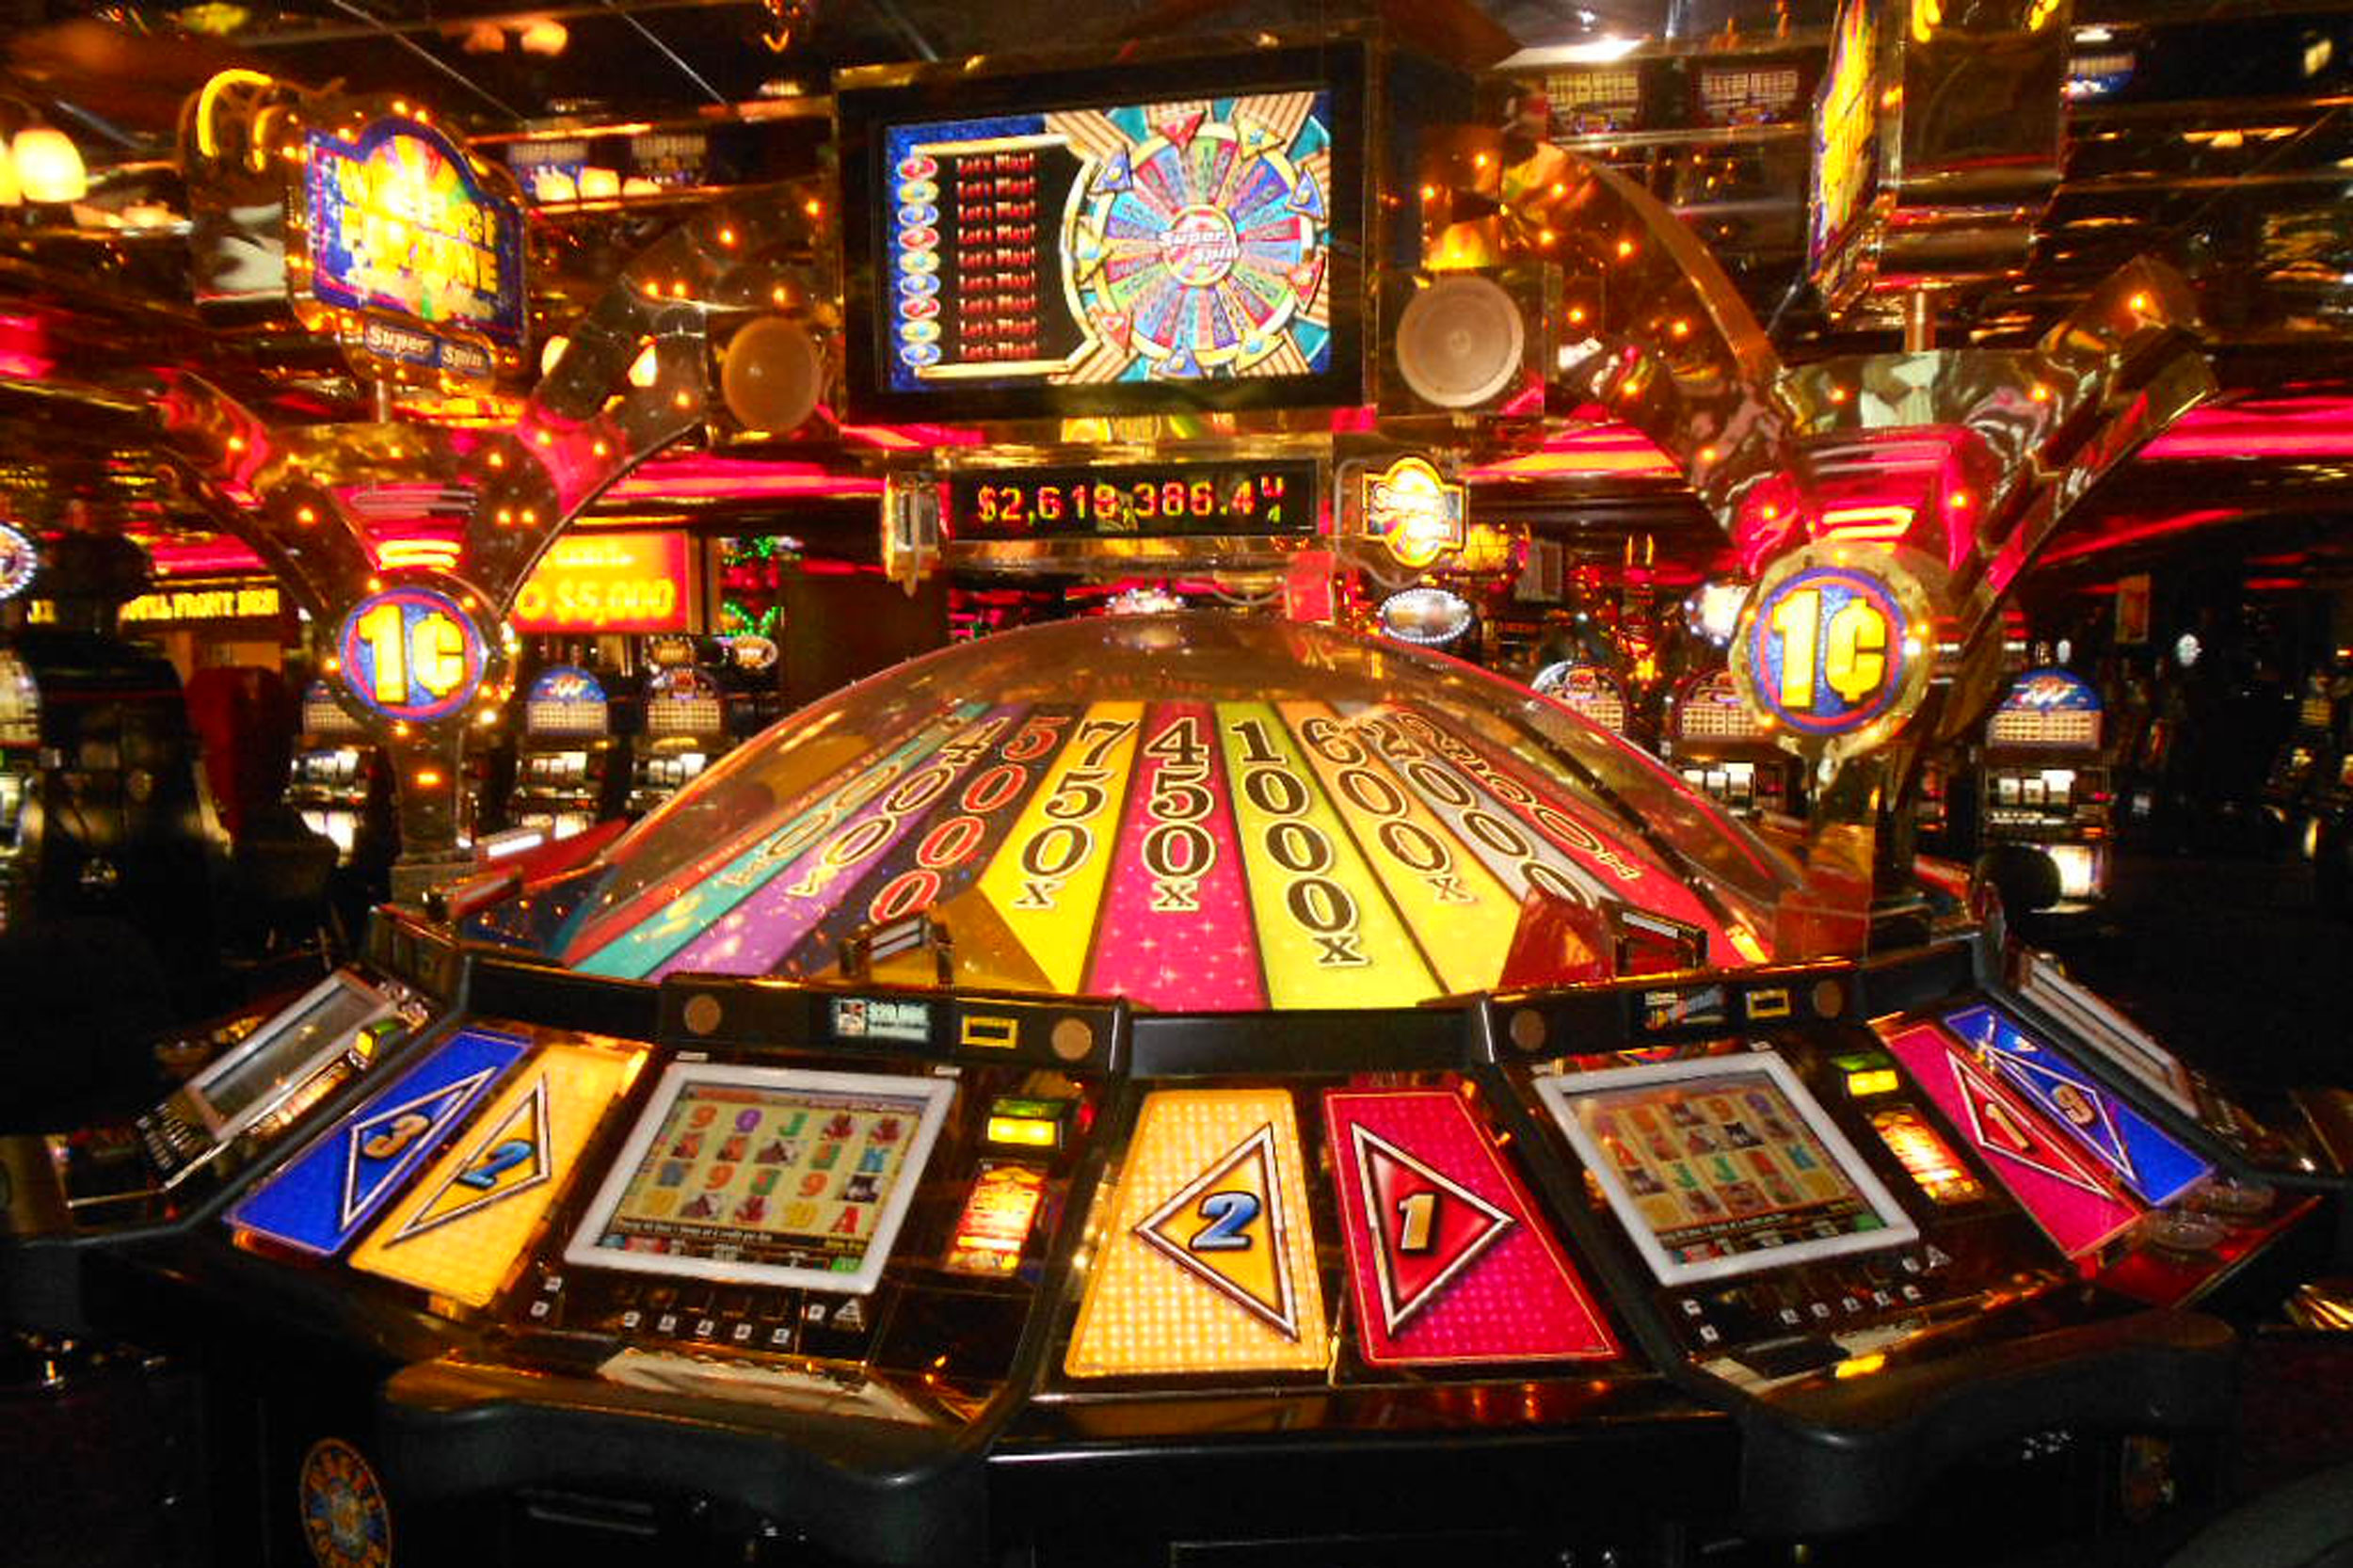 Jeux casino : tout savoir sur le jeu en ligne